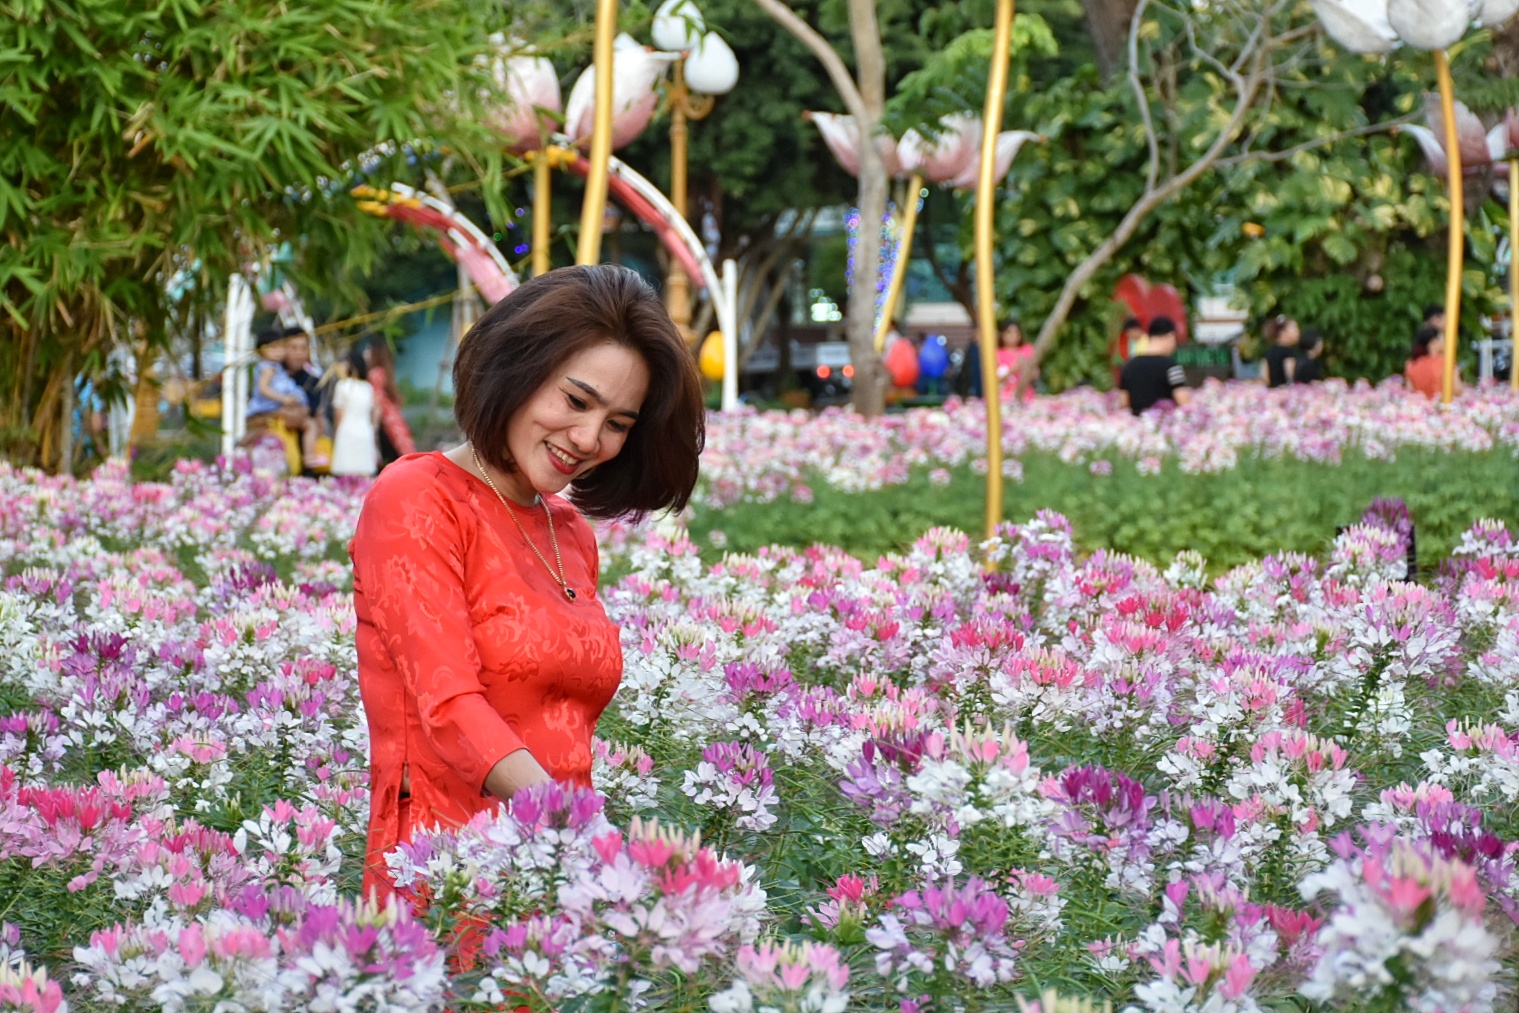 Khu vườn hoa Hồng ri tại HHX thu hút các bạn gái đến chụp hình.